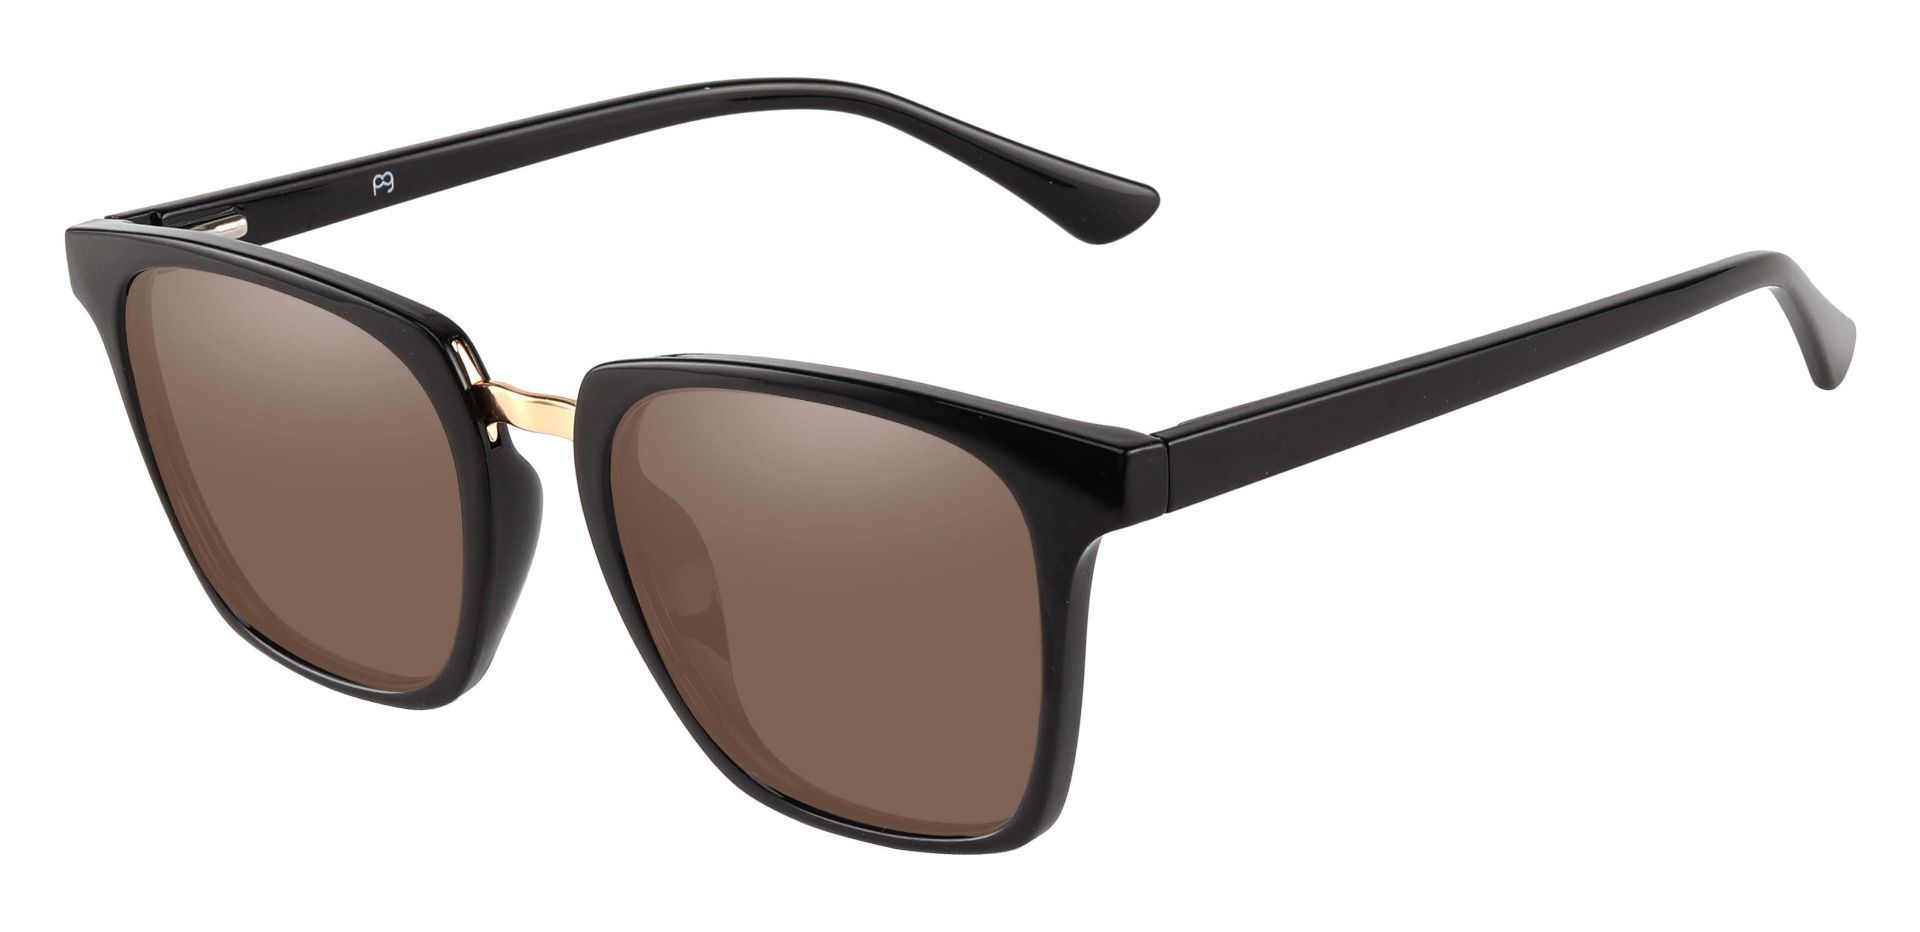 Delta Square Progressive Sunglasses - Black Frame With Brown Lenses